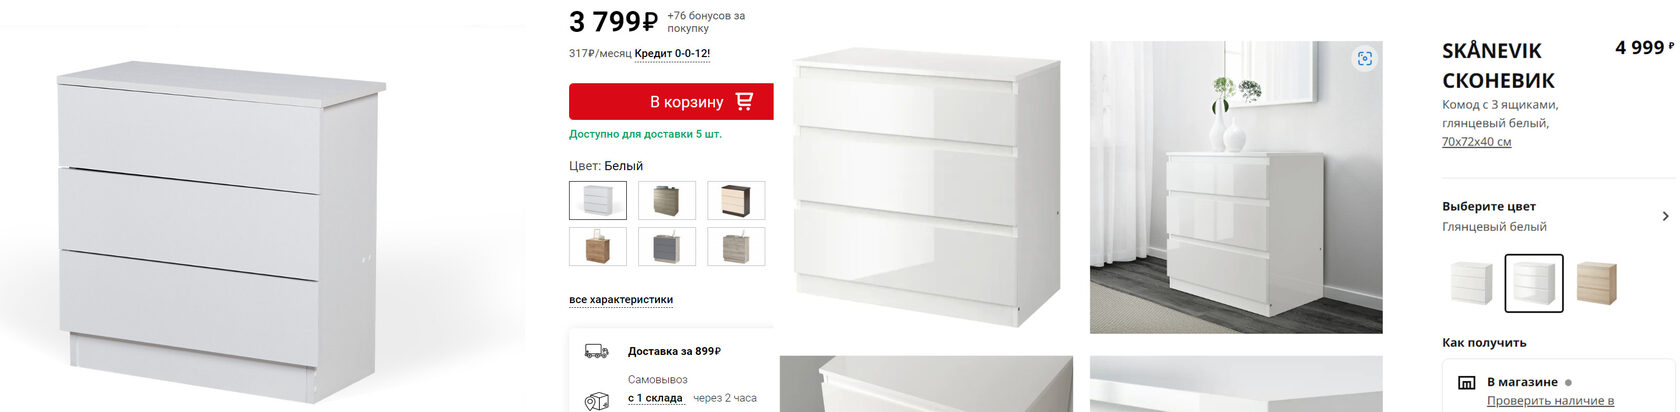 Слева — комод из Hoff, справа — IKEA